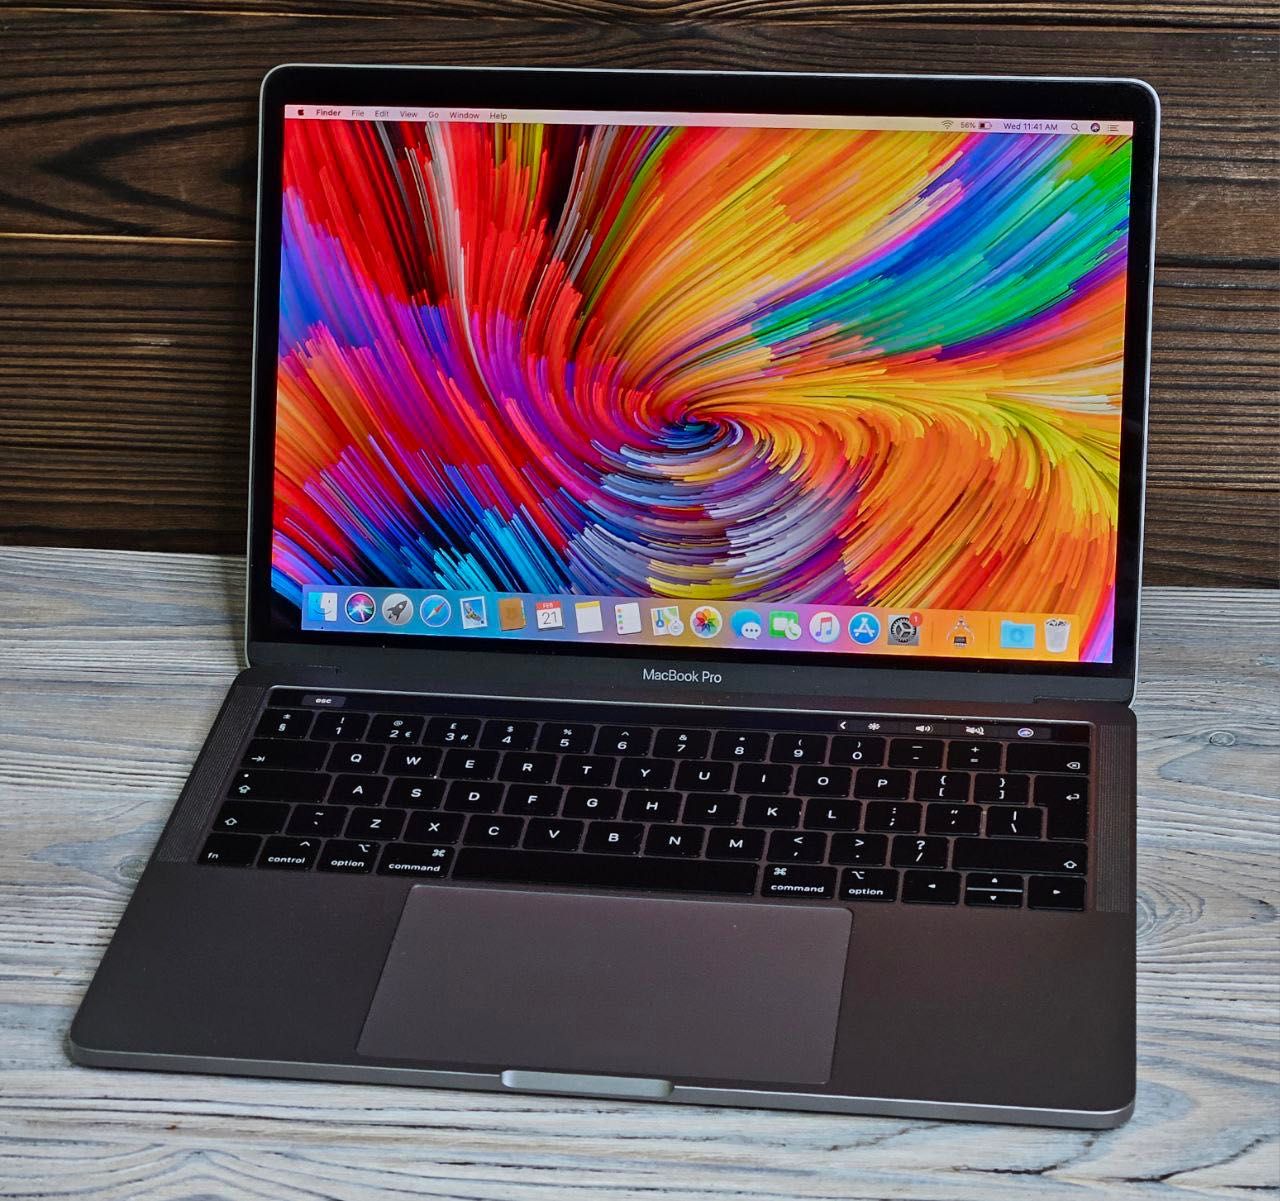 MacBook Pro 13 2019 i5 16gb 256ssdTouchbar магазин (Z0WQ000QM) 560$